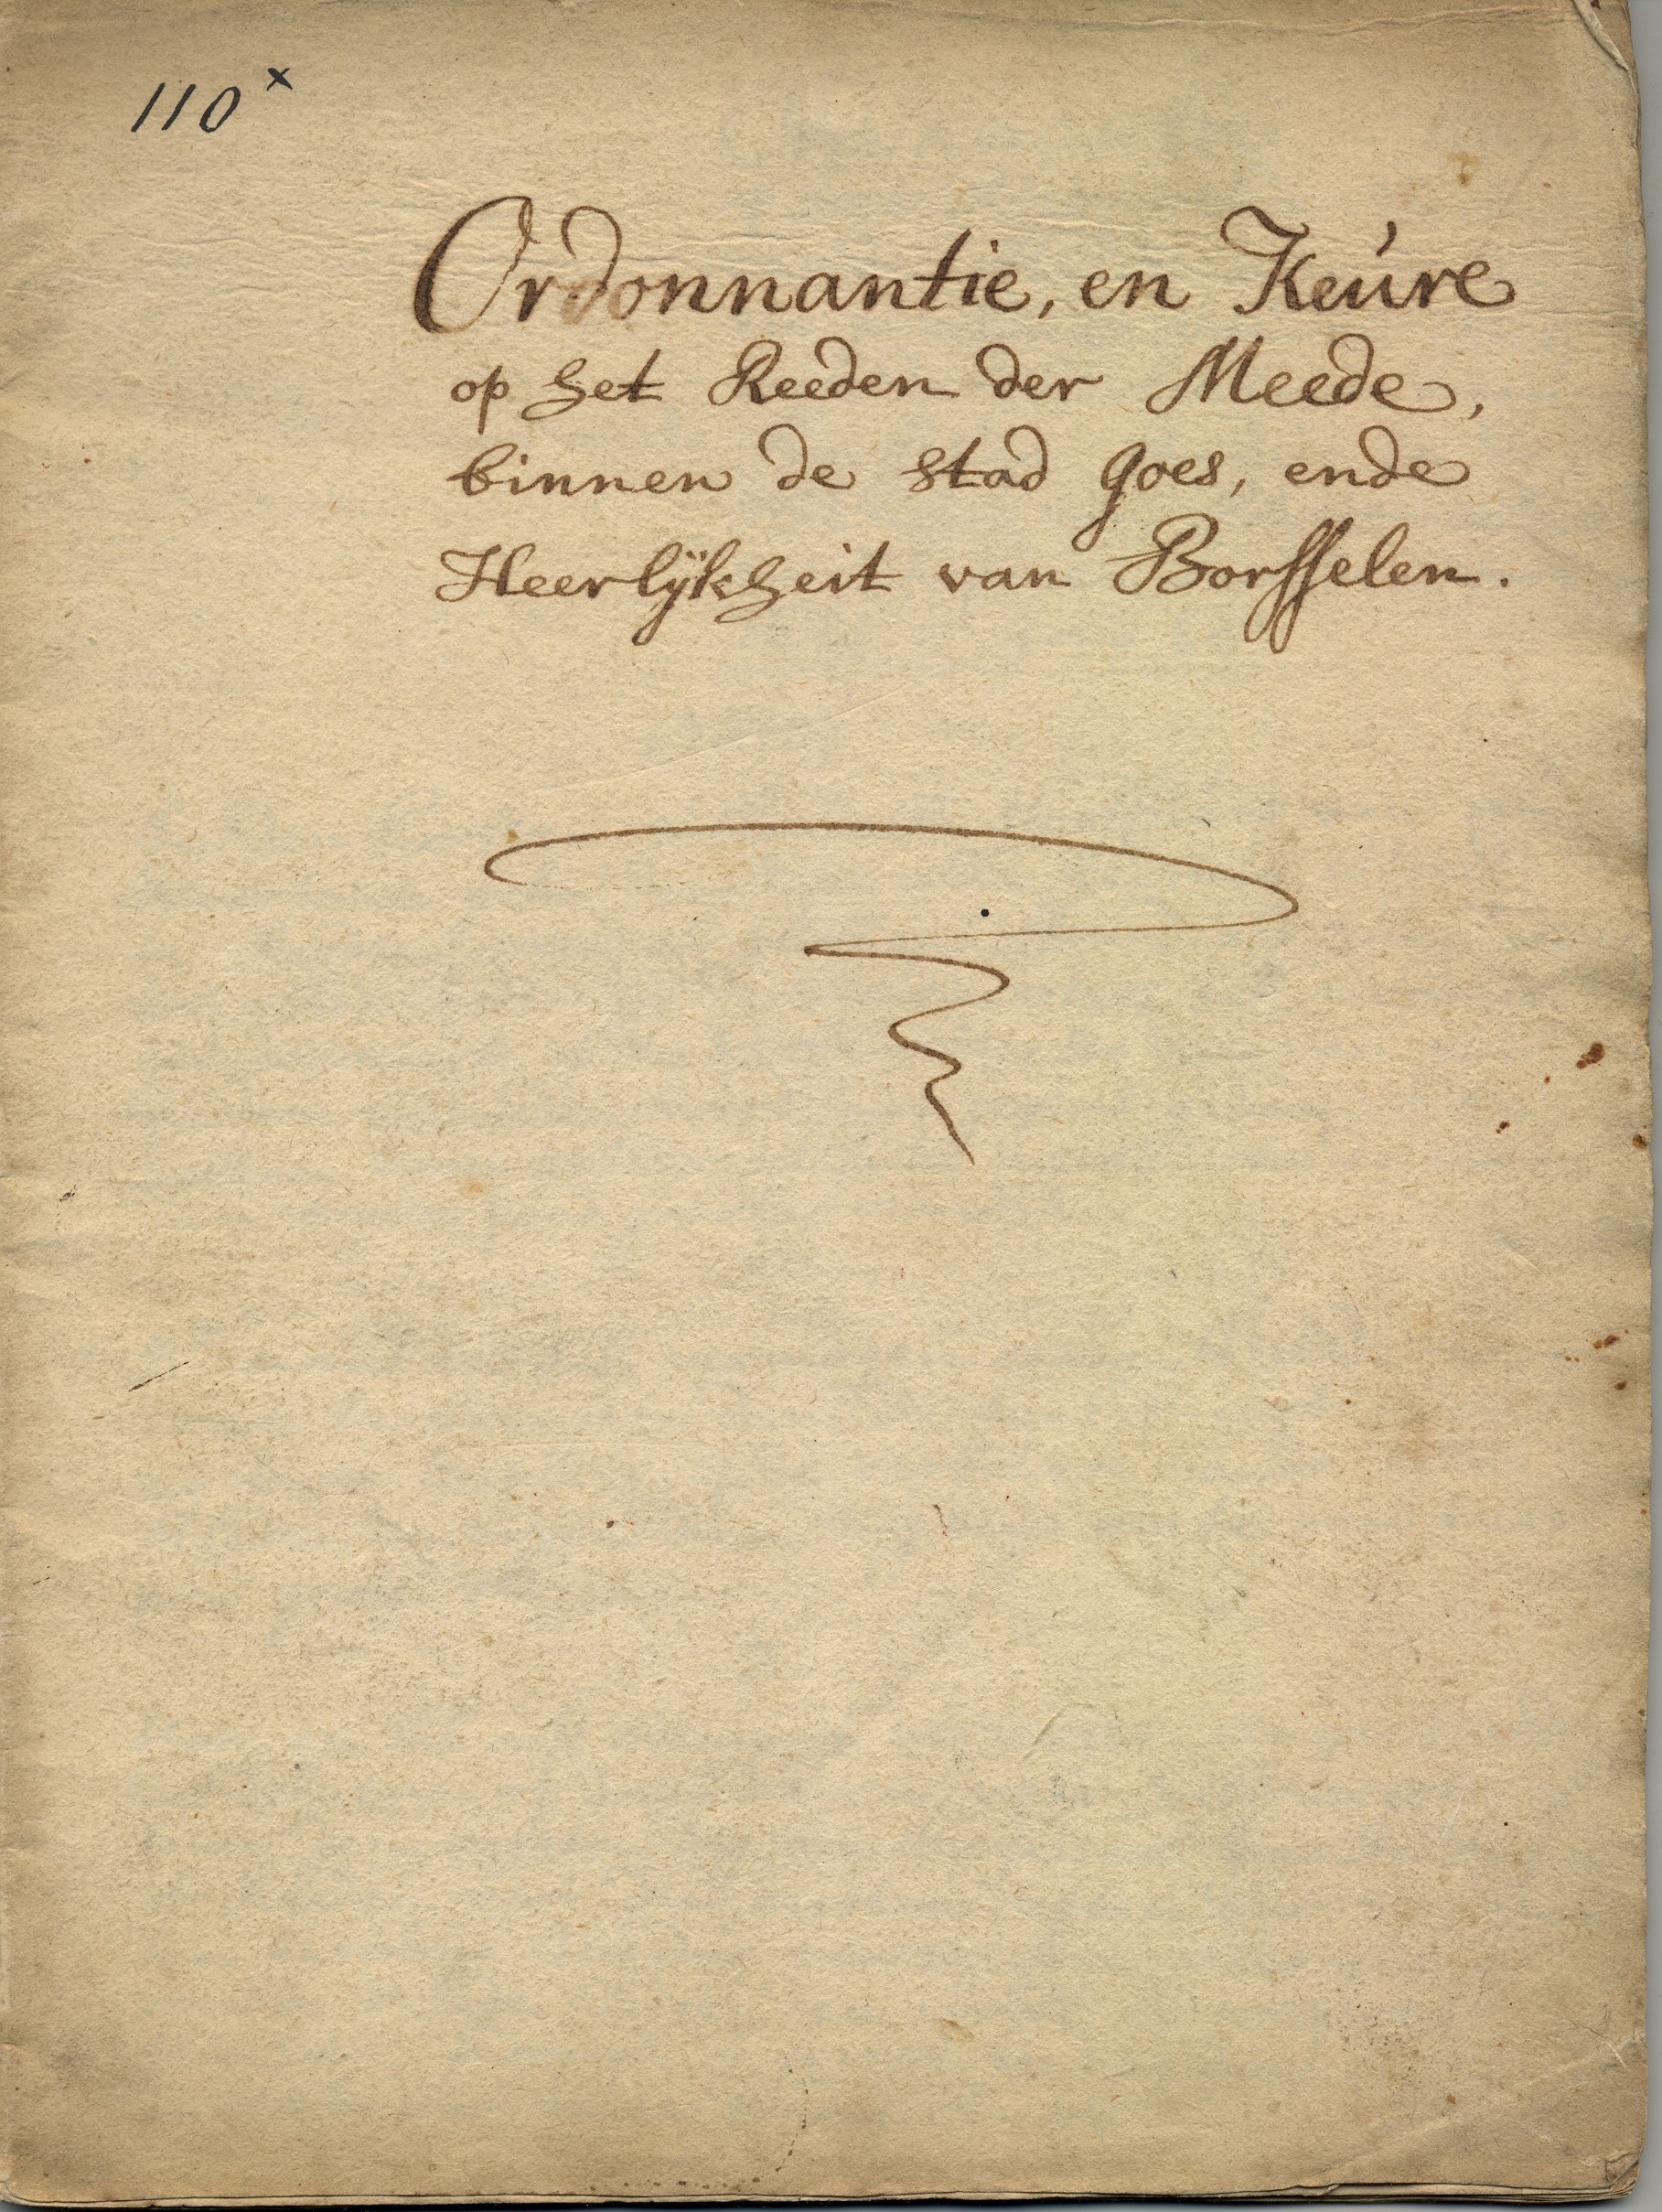 Ordonnantie en keure op meekrap, 1622, 1699